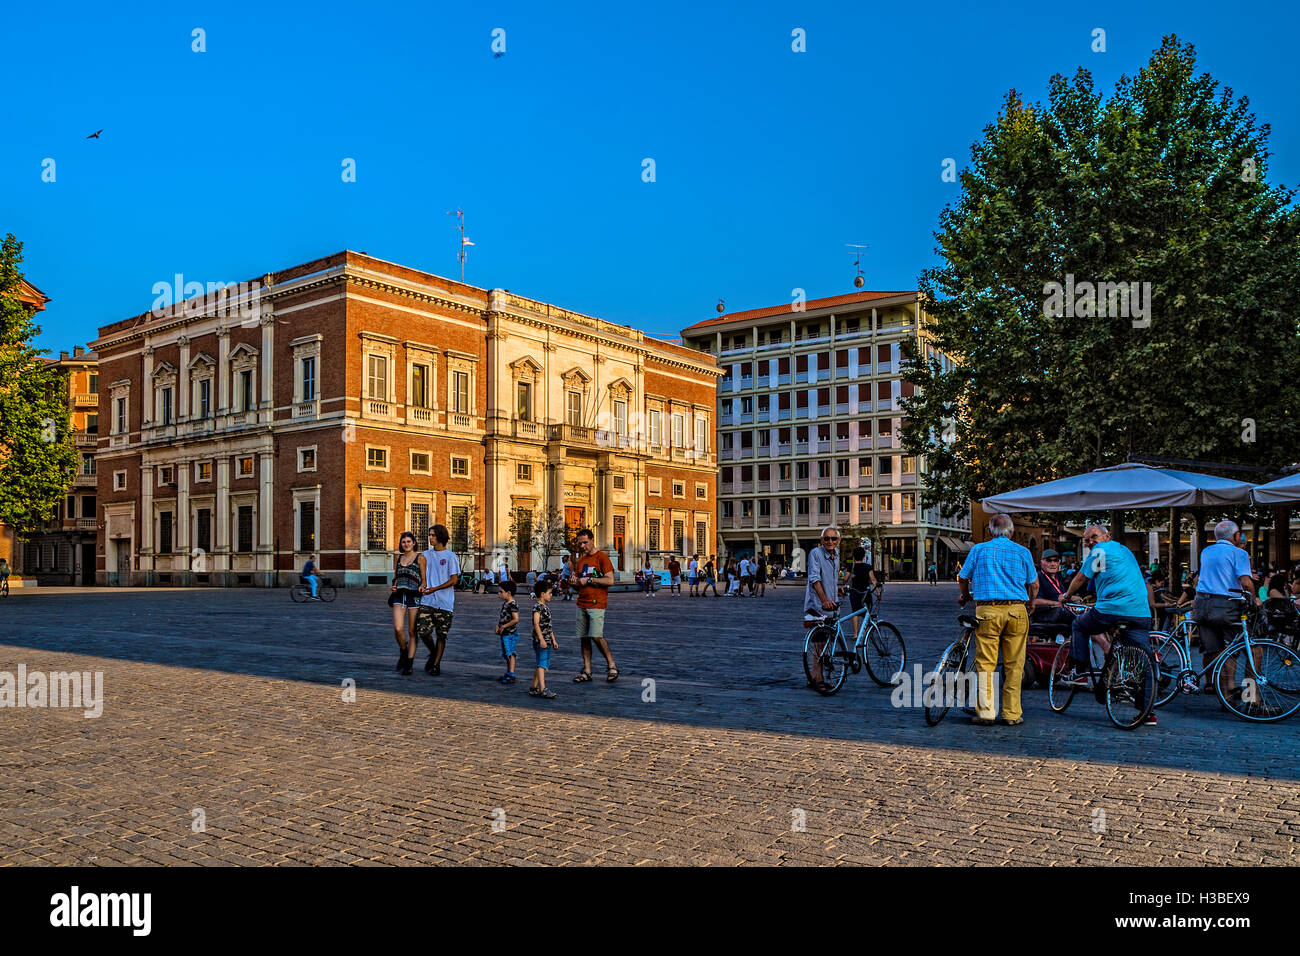 Italien-Emilia-Romagna-Reggio Emilia Piazza dei Teatri - Piazza Martiri del VII Luglio (Piazza Cavour) Stockfoto